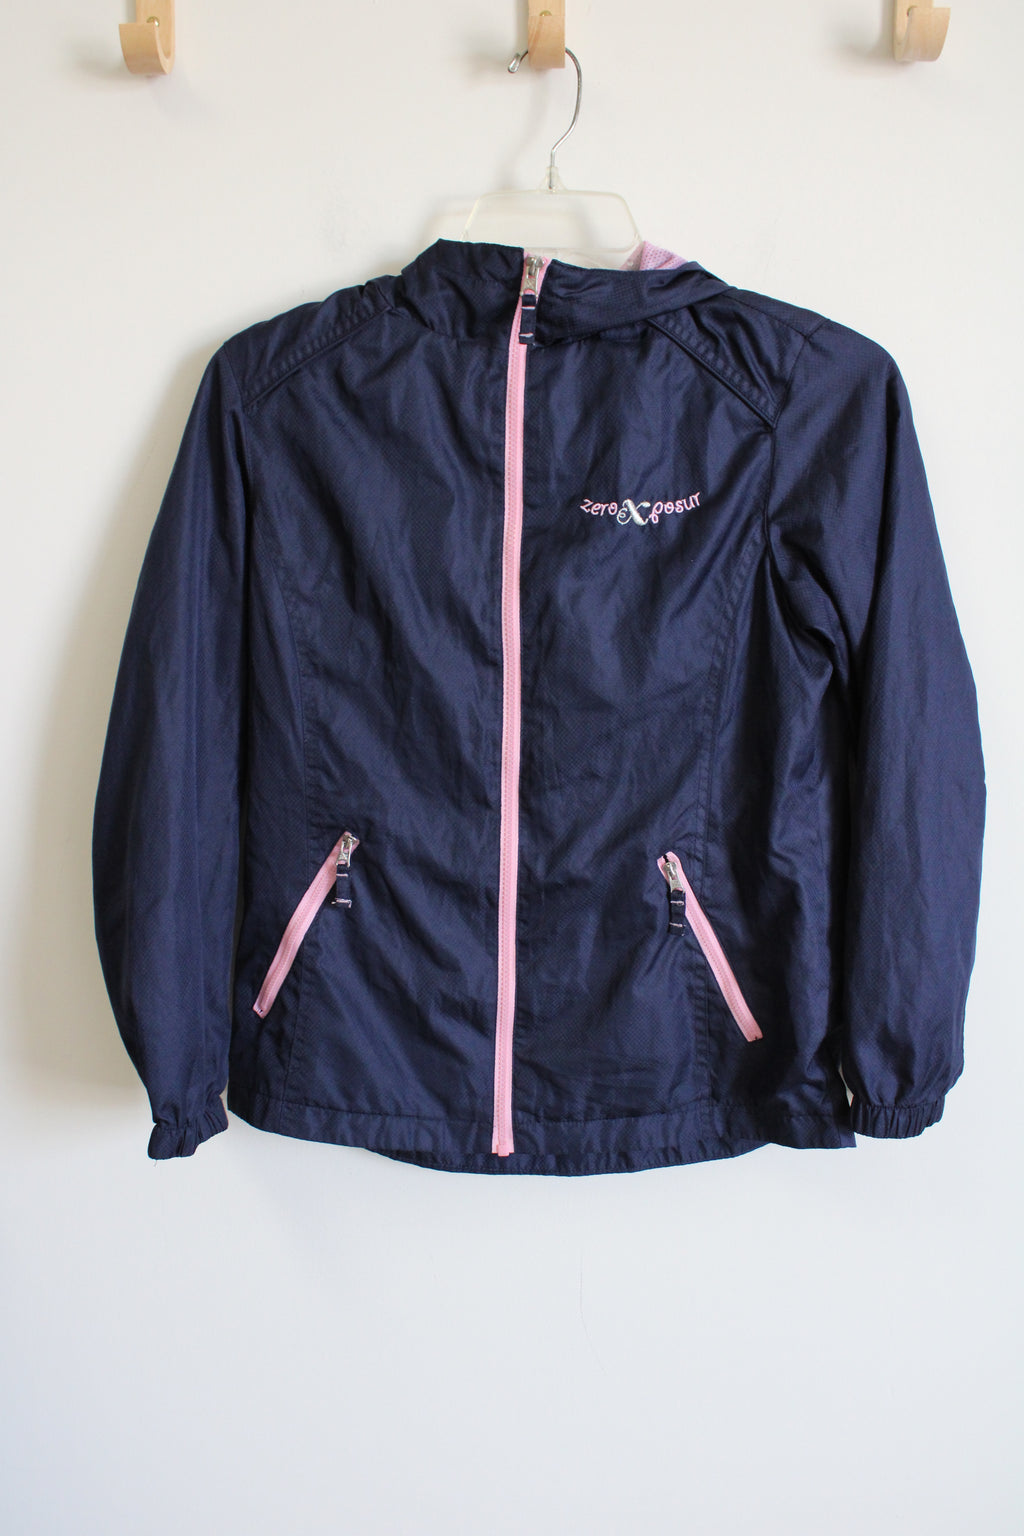 ZeroXposure Navy Blue Pink Windbreaker Light Jacket | Youth L (14)